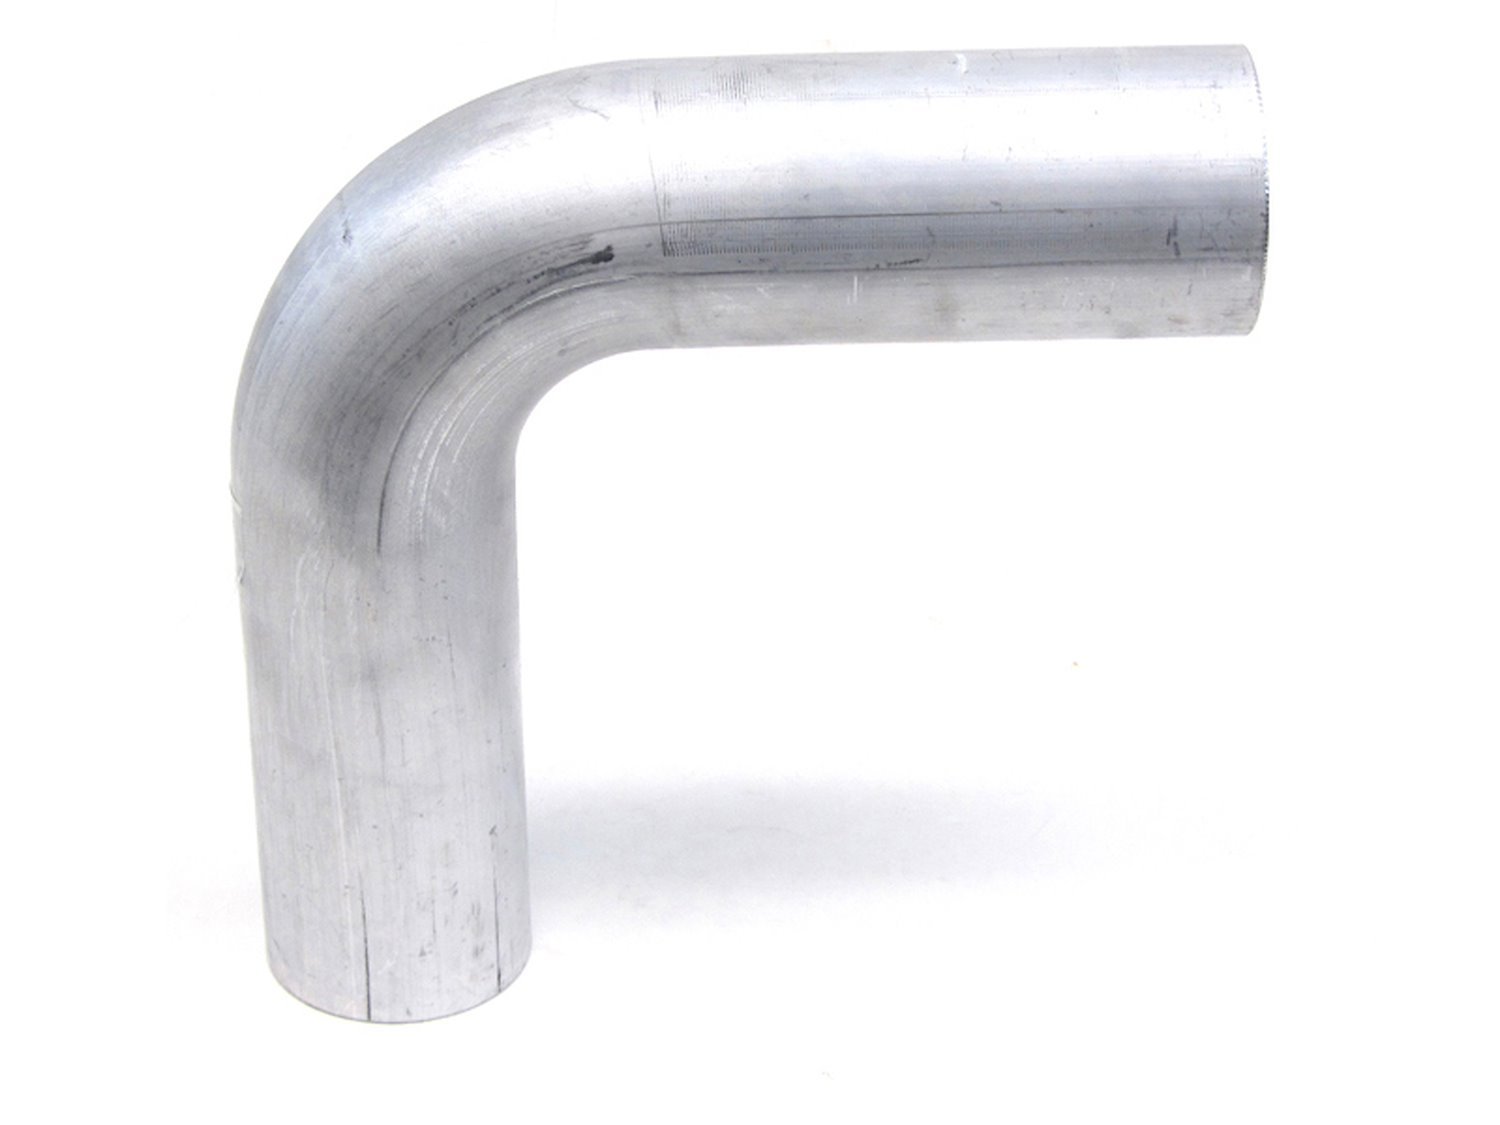 AT90-225-CLR-3 Aluminum Elbow Tube, 6061 Aluminum, 90-Degree Bend Elbow Tubing, 2-1/4 in. OD, Large Radius, 3 in. CLR